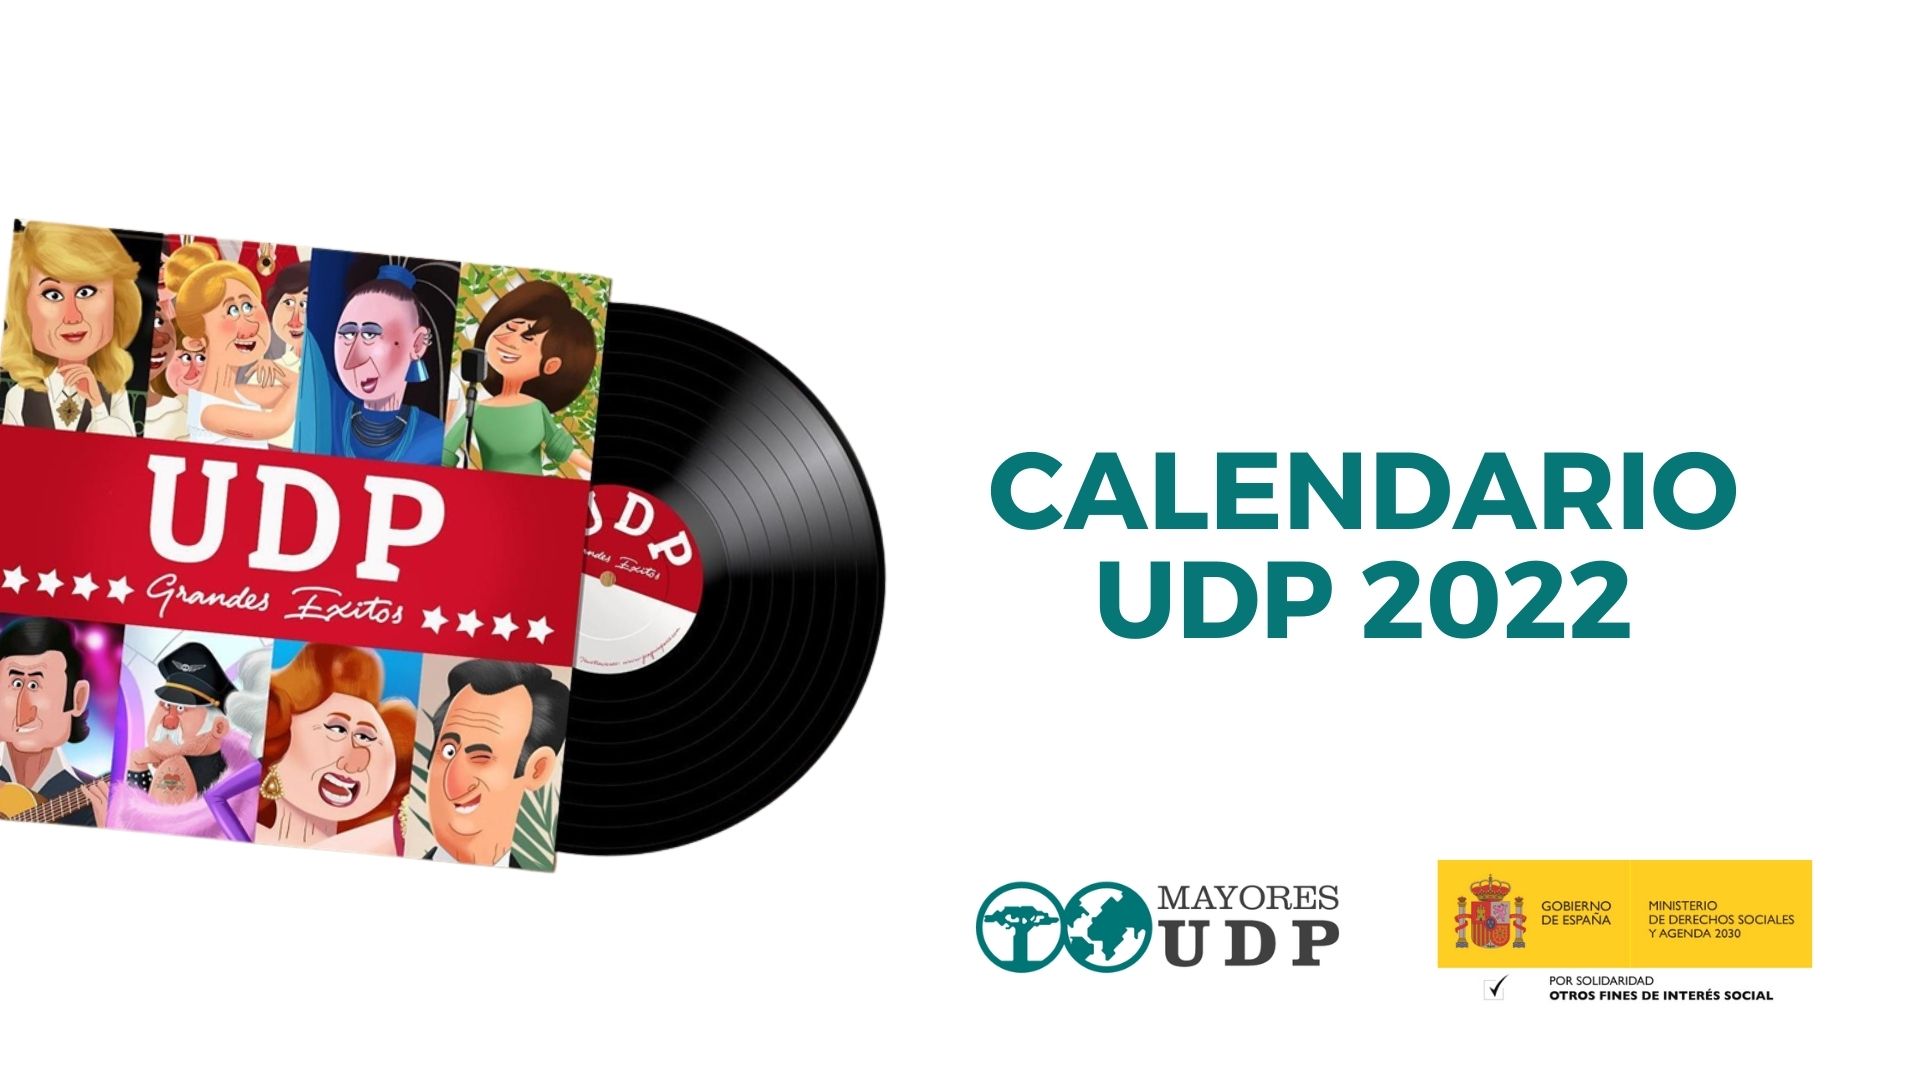 MayoresUDP presenta el calendario 2022